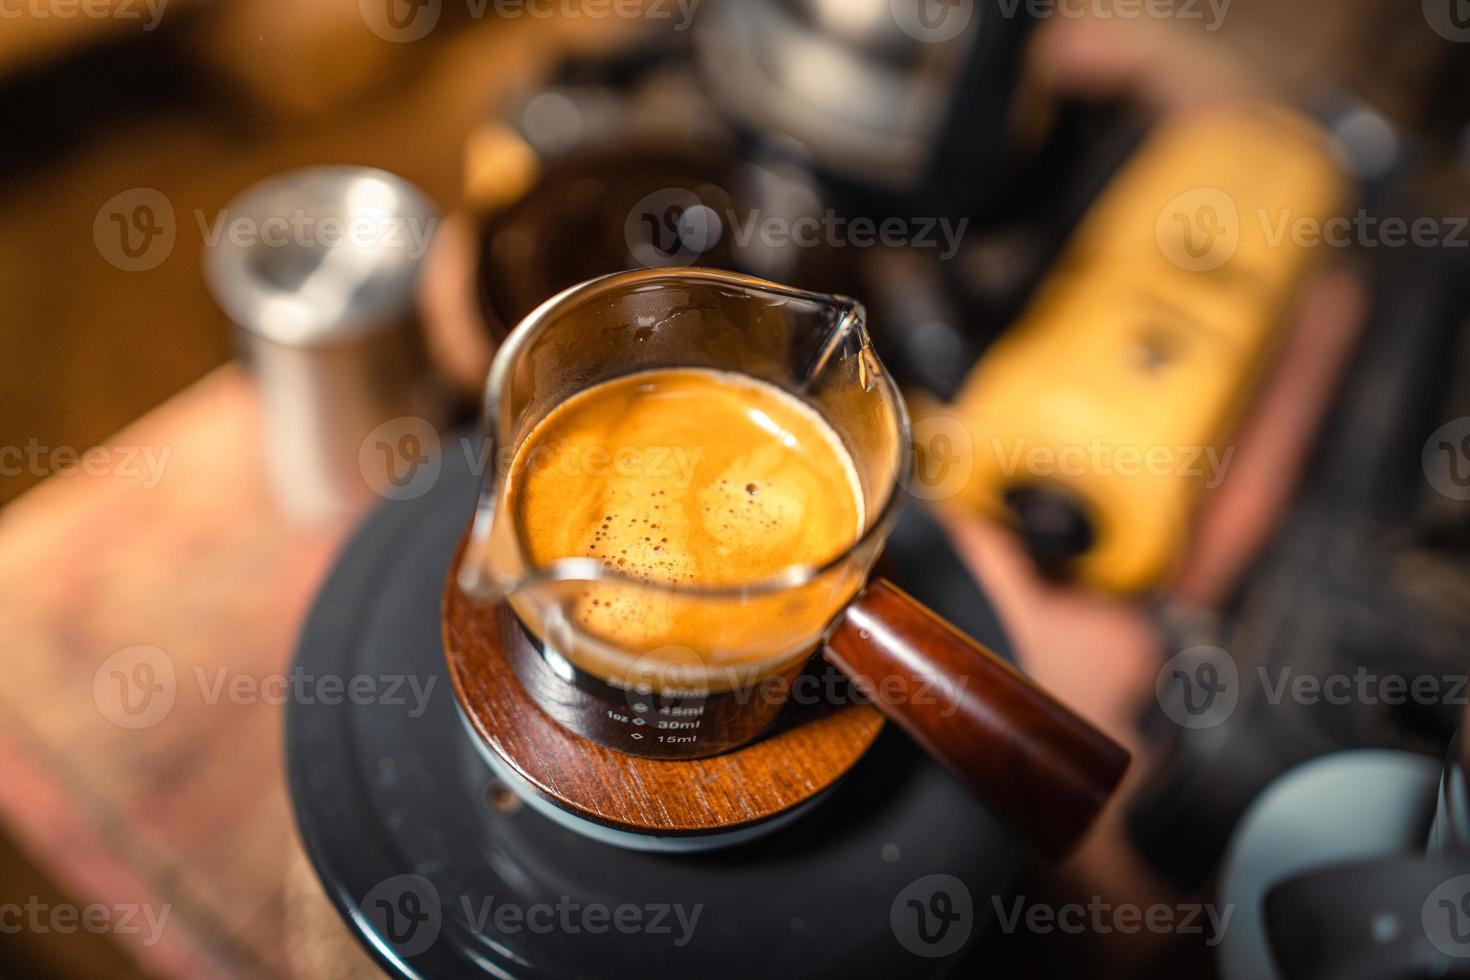 espresso caffè macchina fabbricazione un' caffè foto